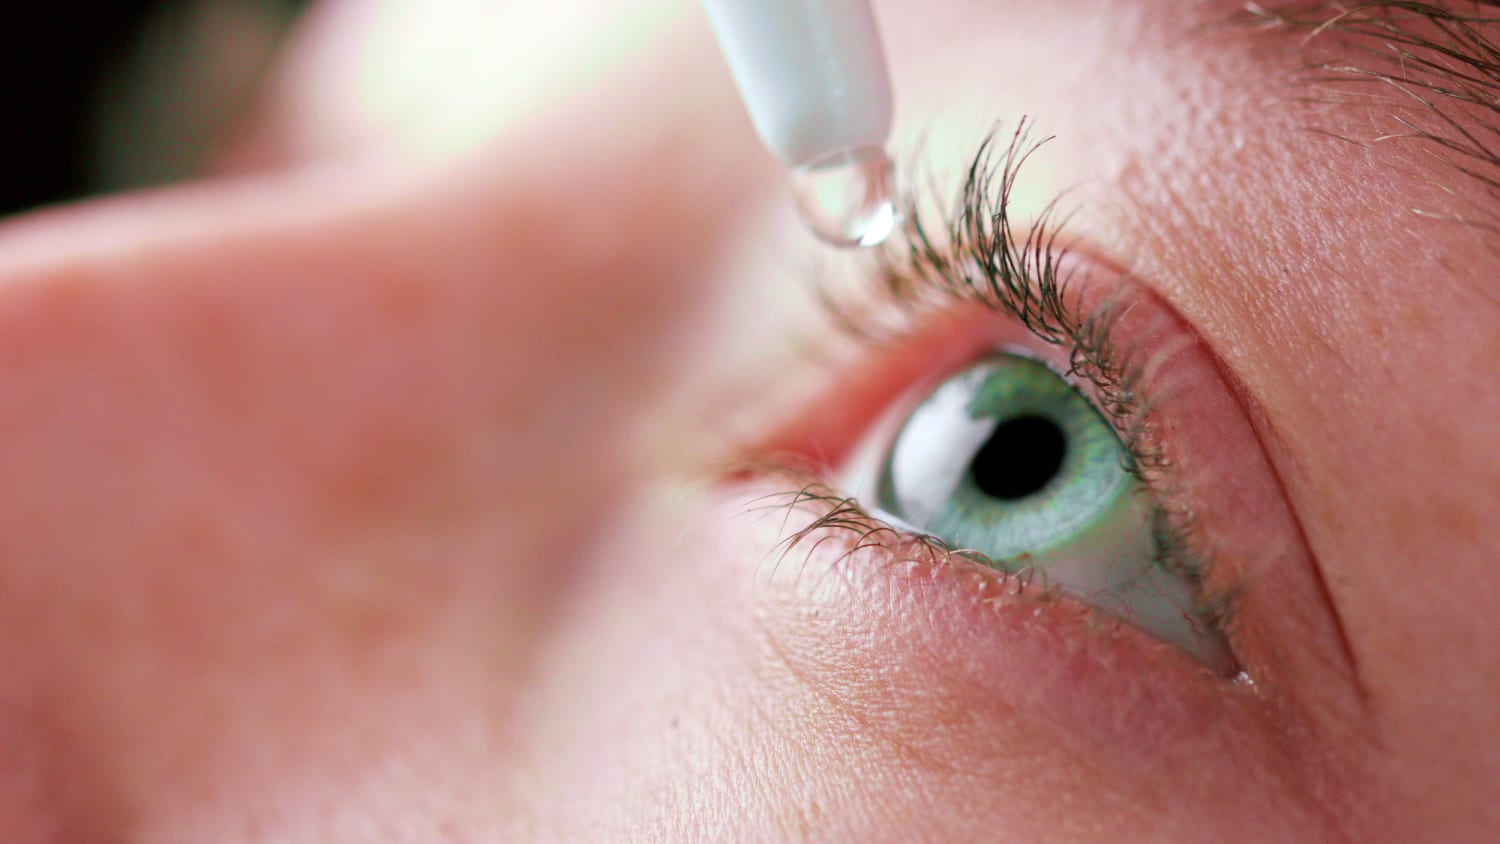 Сухой глаз симптомы капли. Сидромсухового глаза. Синдром сухого глаза симптомы.